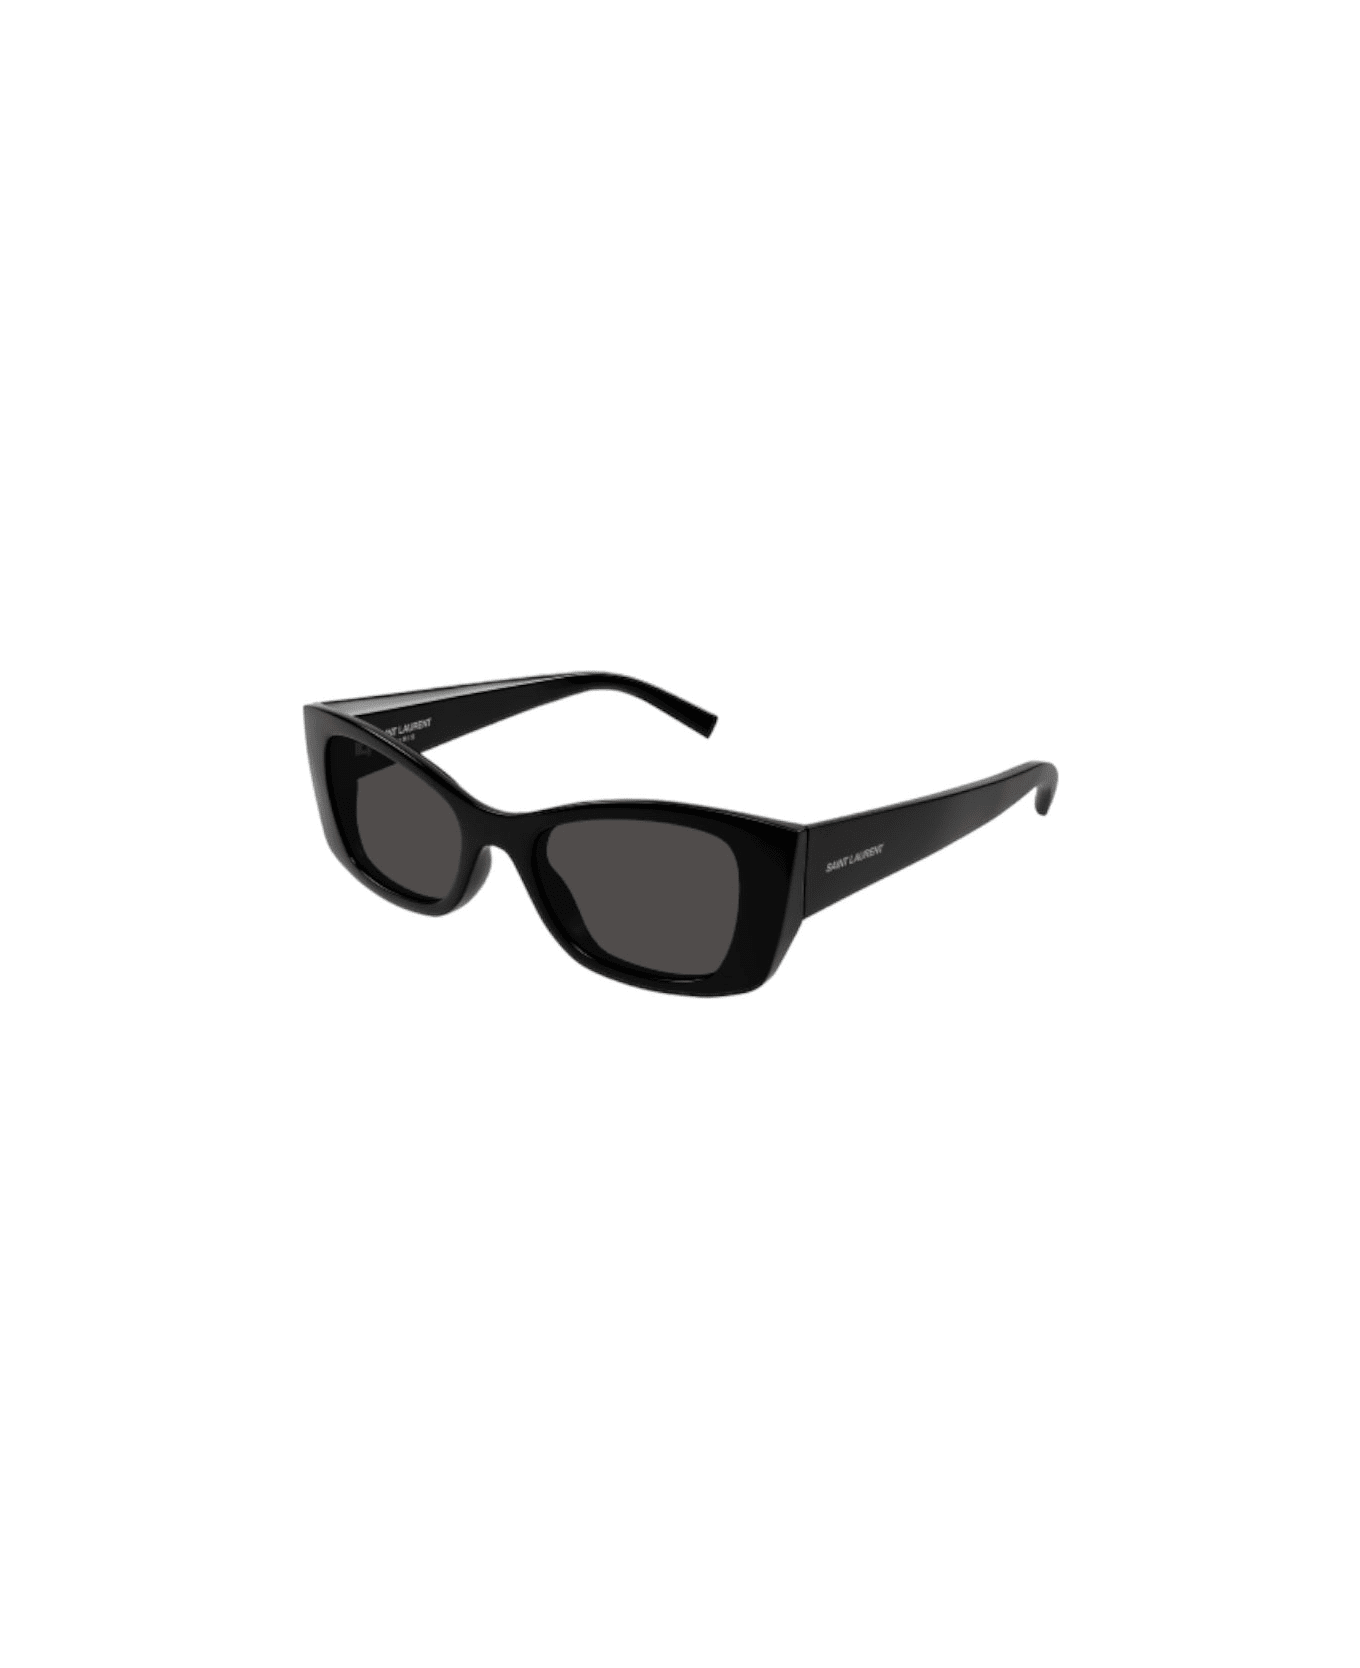 Saint Laurent Eyewear Sl 593 - Black Sunglasses